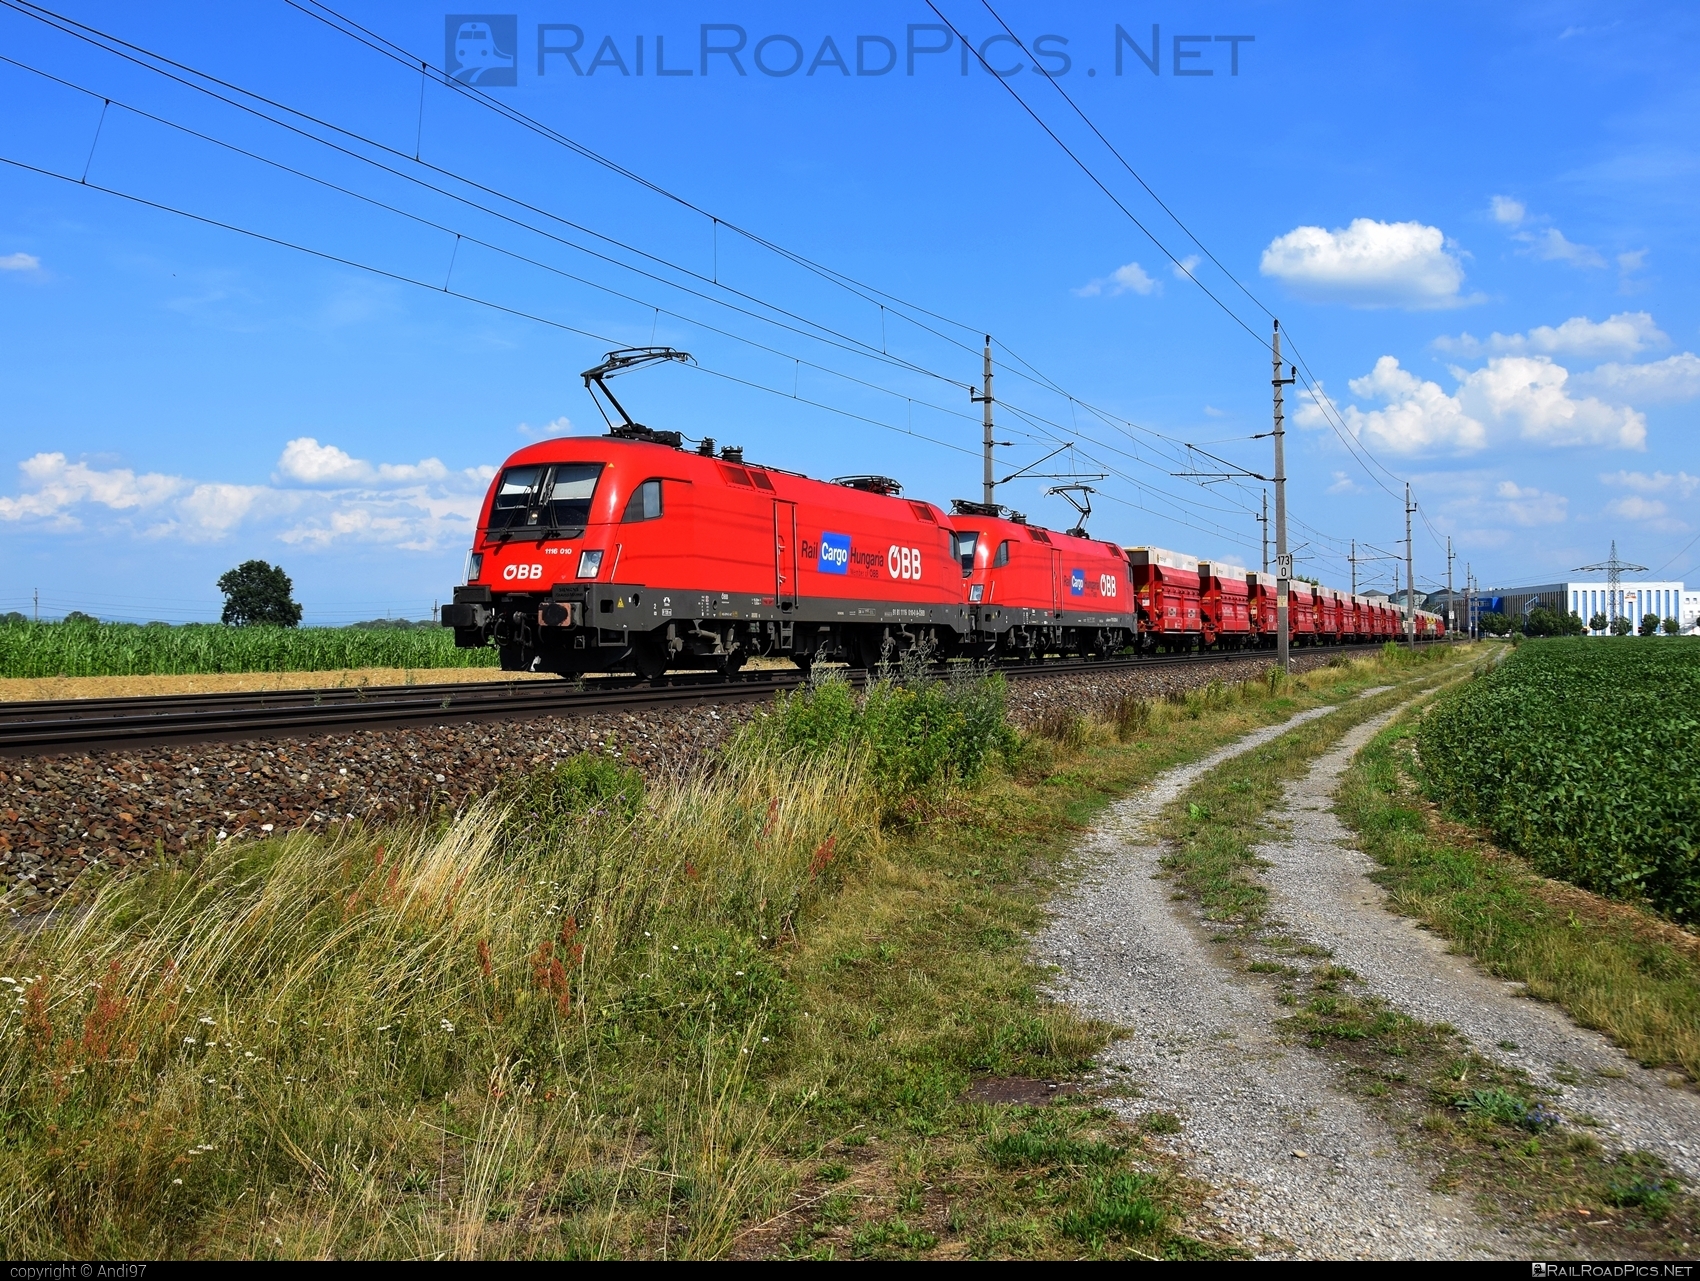 Siemens ES 64 U2 - 1116 010 operated by Rail Cargo Austria AG #es64 #es64u2 #eurosprinter #obb #osterreichischebundesbahnen #rcw #siemens #siemensEs64 #siemensEs64u2 #siemenstaurus #taurus #tauruslocomotive